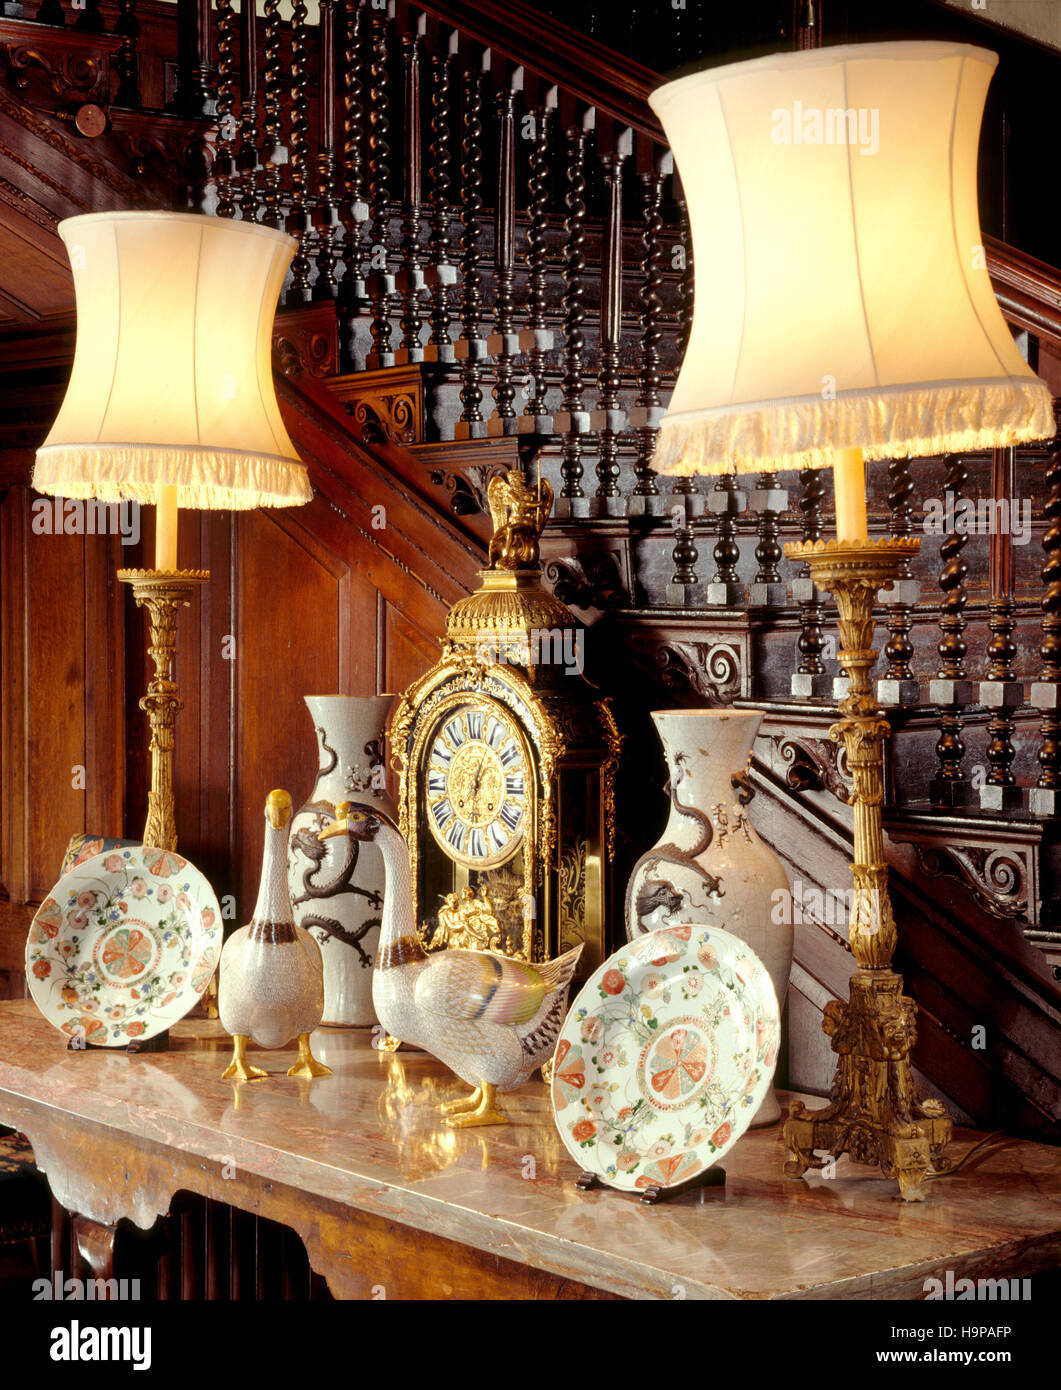 Vista parcial del salón interior en Antony House mostrando la mesa de mármol, gansos, reloj de cerámica, lámparas de mesa, jarrones y platos. Foto de stock